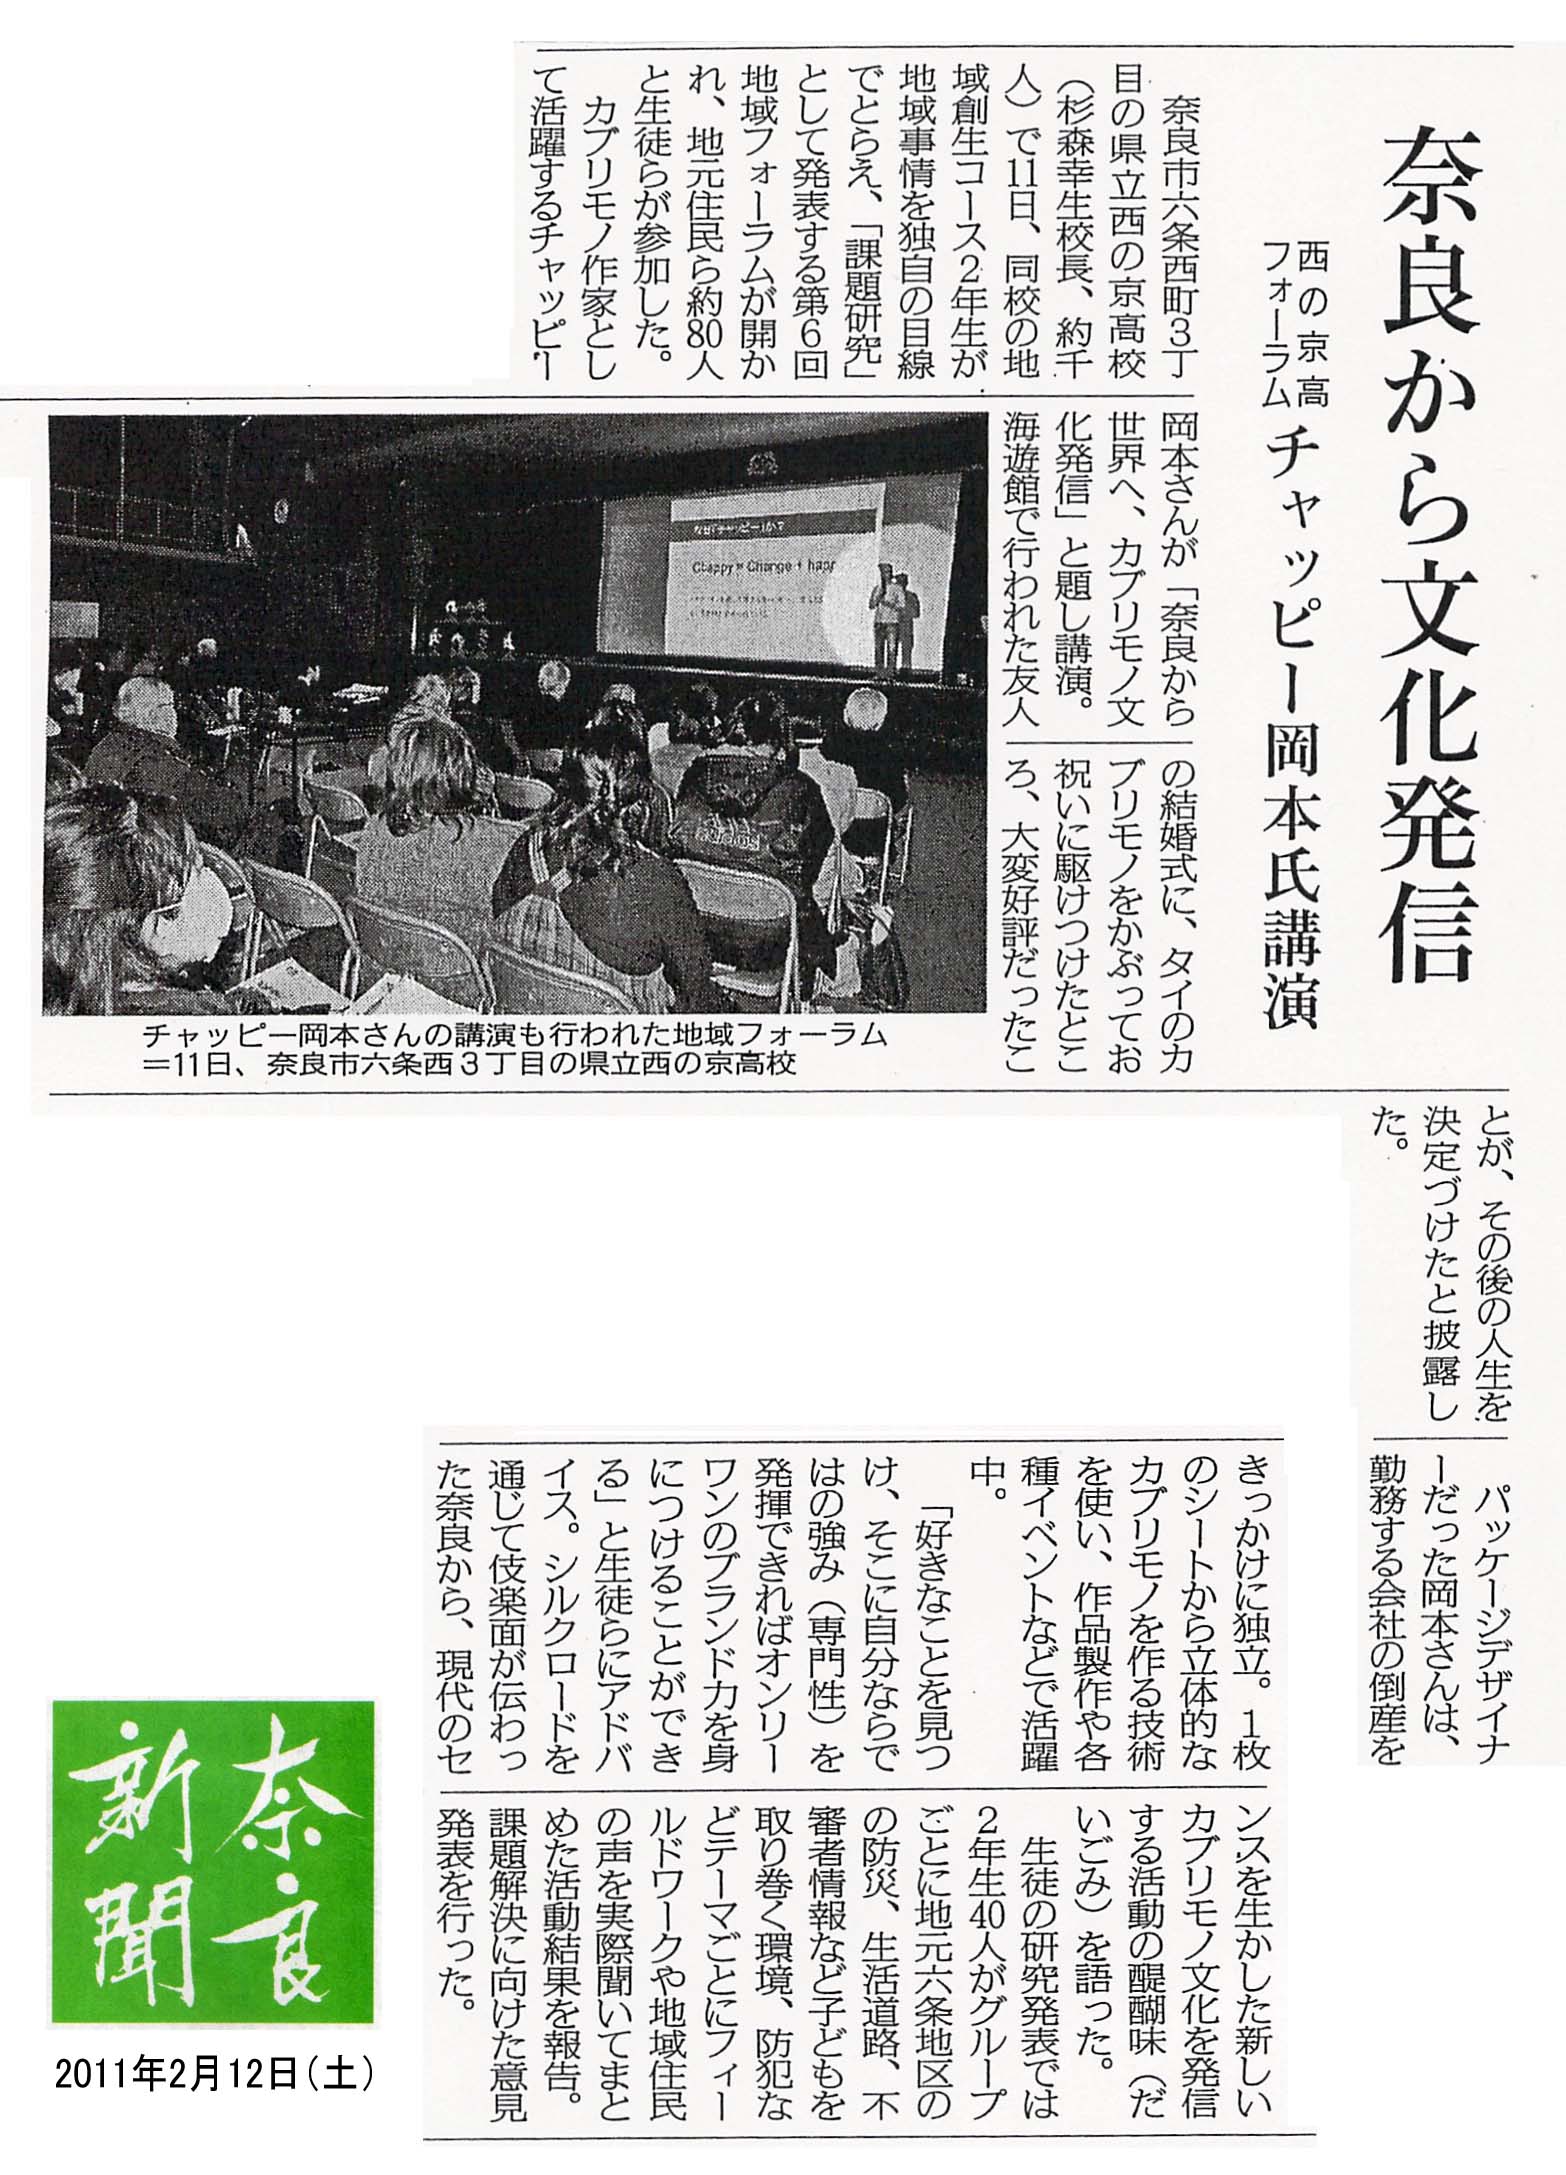 西の京高校地域フォーラム奈良新聞